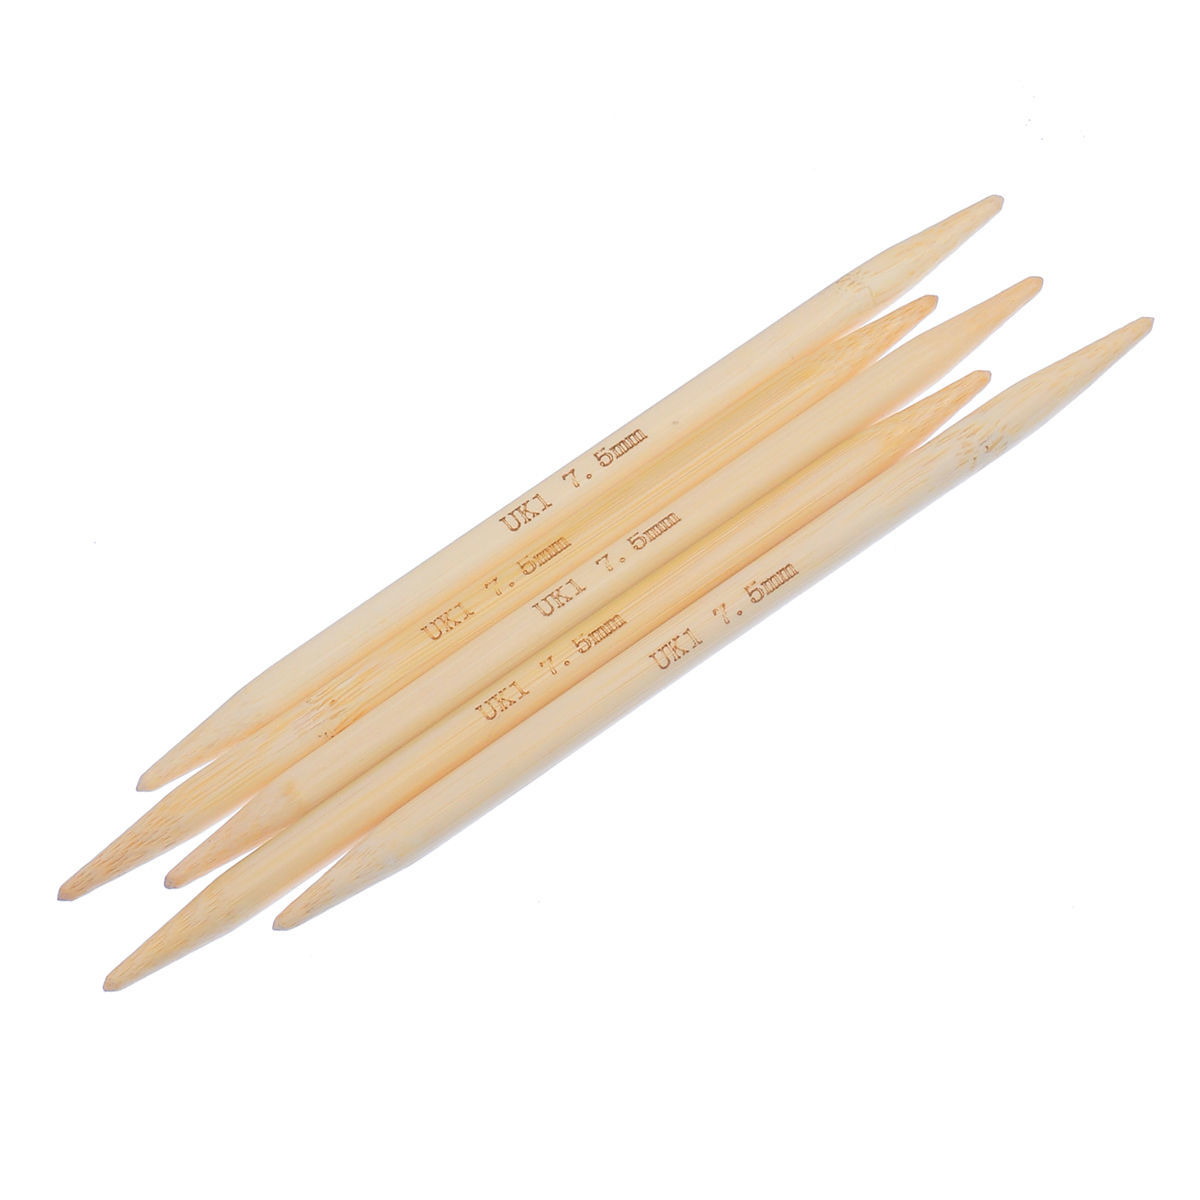 (UK1 7.5mm) 竹 ダブルポイント 編み針 ナチュラル 15cm 長さ、 1 対 ( 5 個/セット) の画像